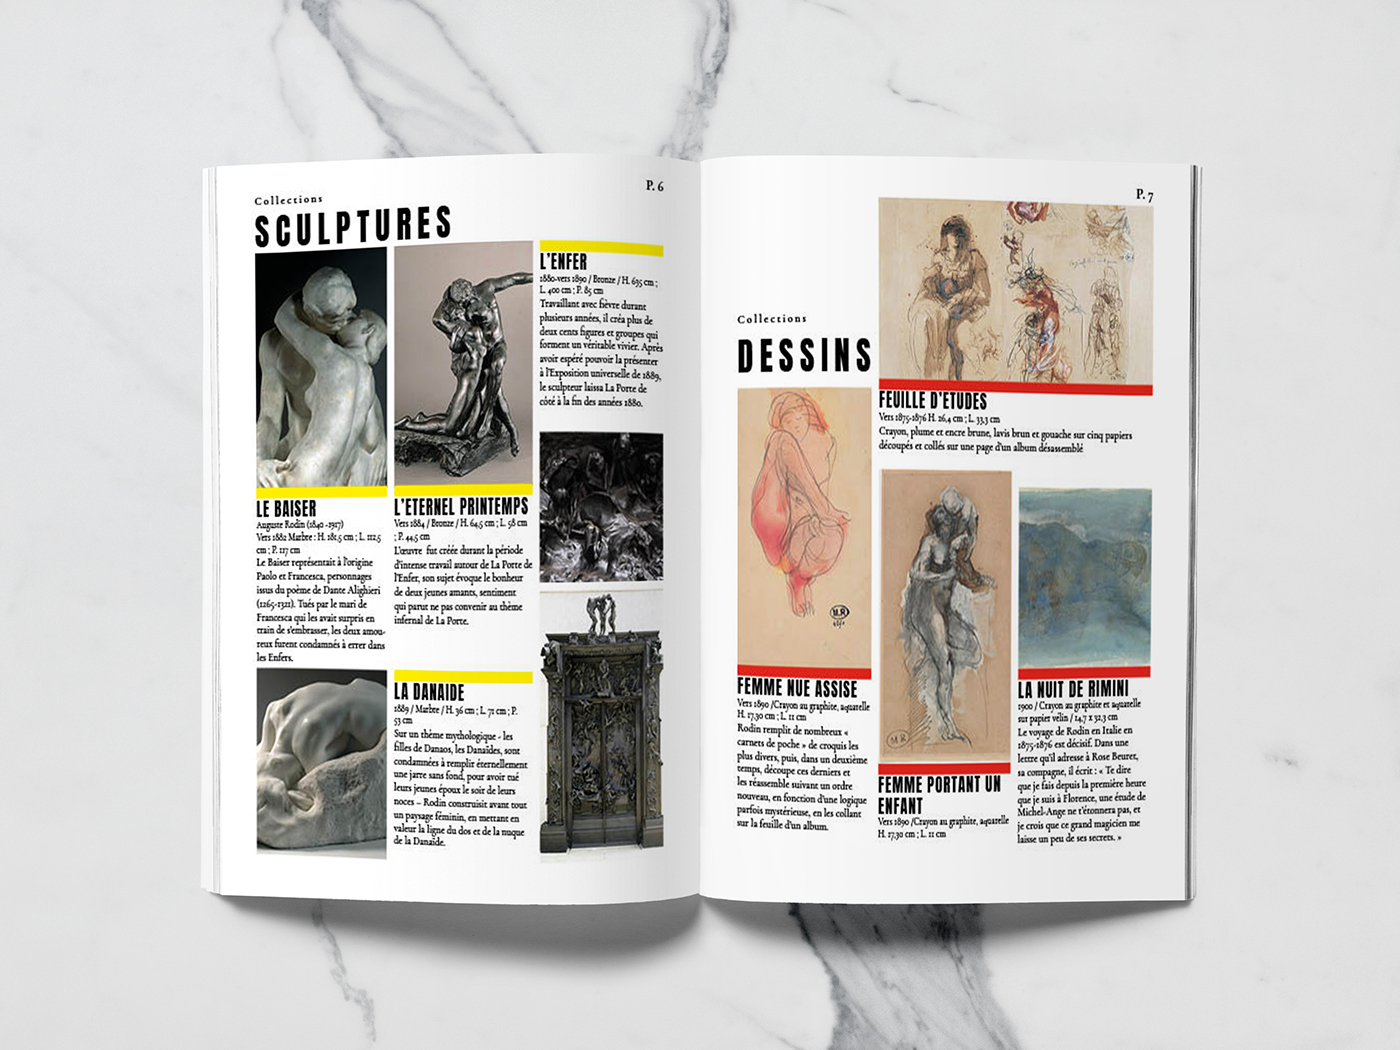 presse musée edition module design arts